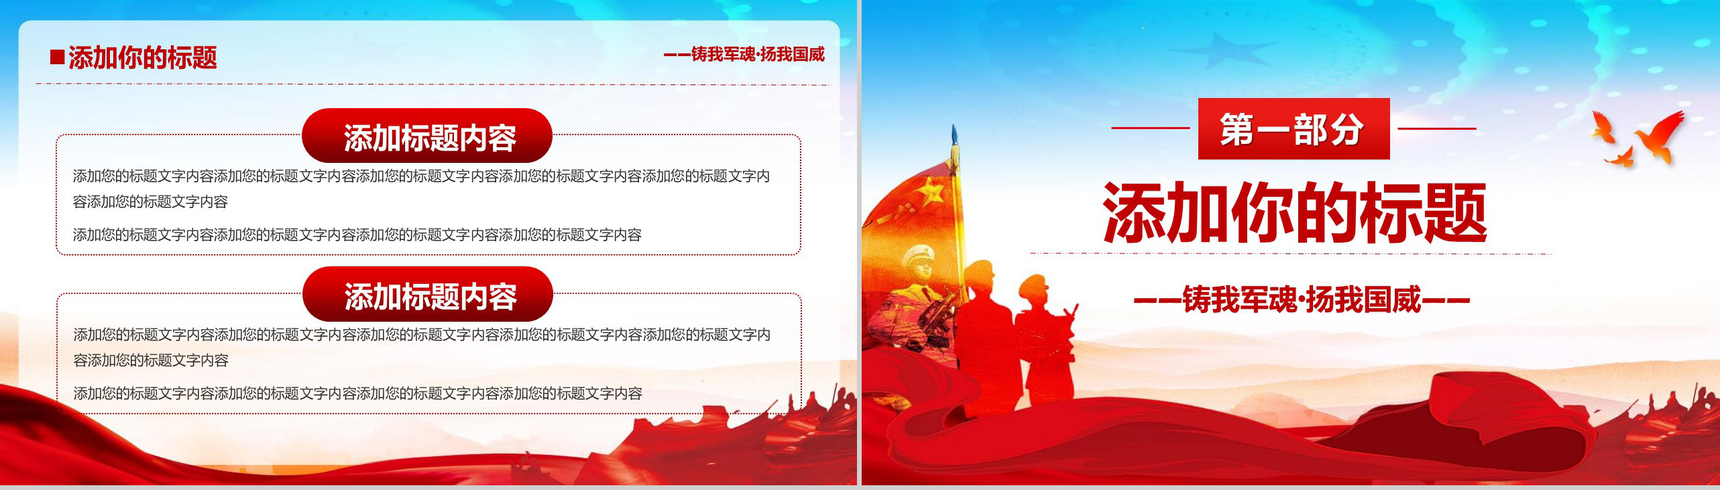 中国海军成立70周年活动现场PPT模板-5